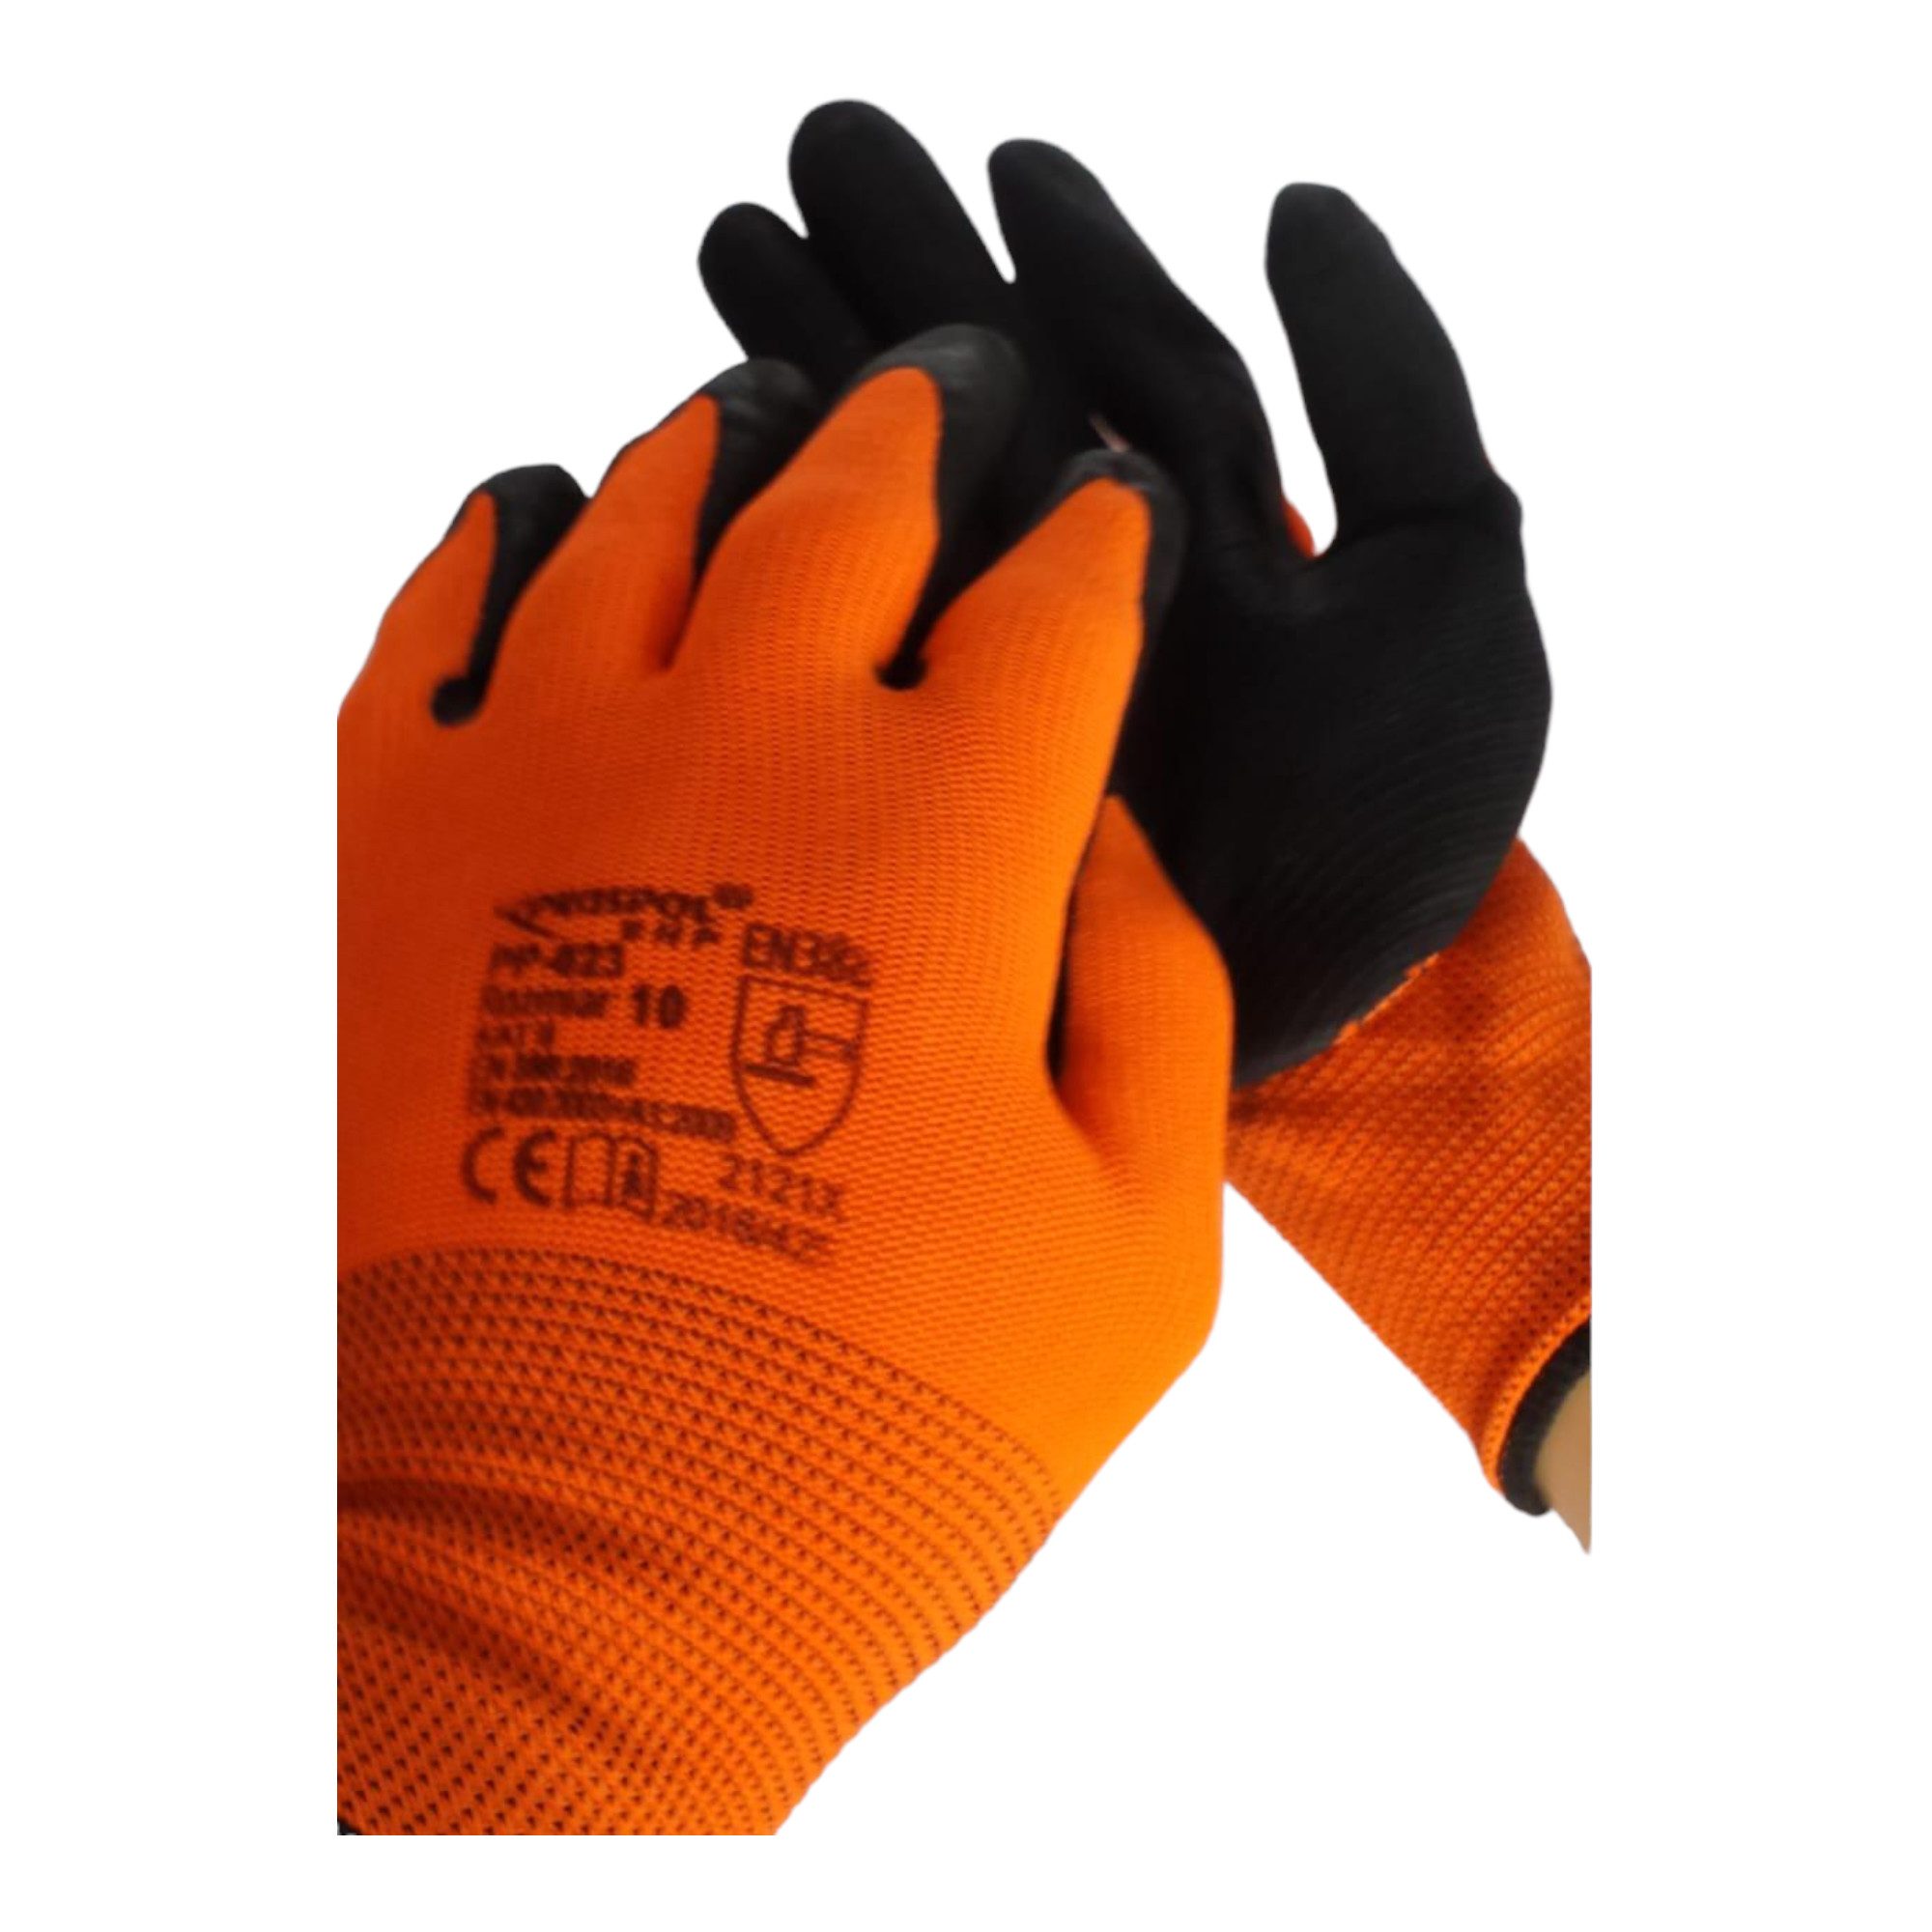 Arbeitshandschuhe K027 violett/orange -10 Arbeits-, Schutz- Nylonhandschuhe, die im Hand